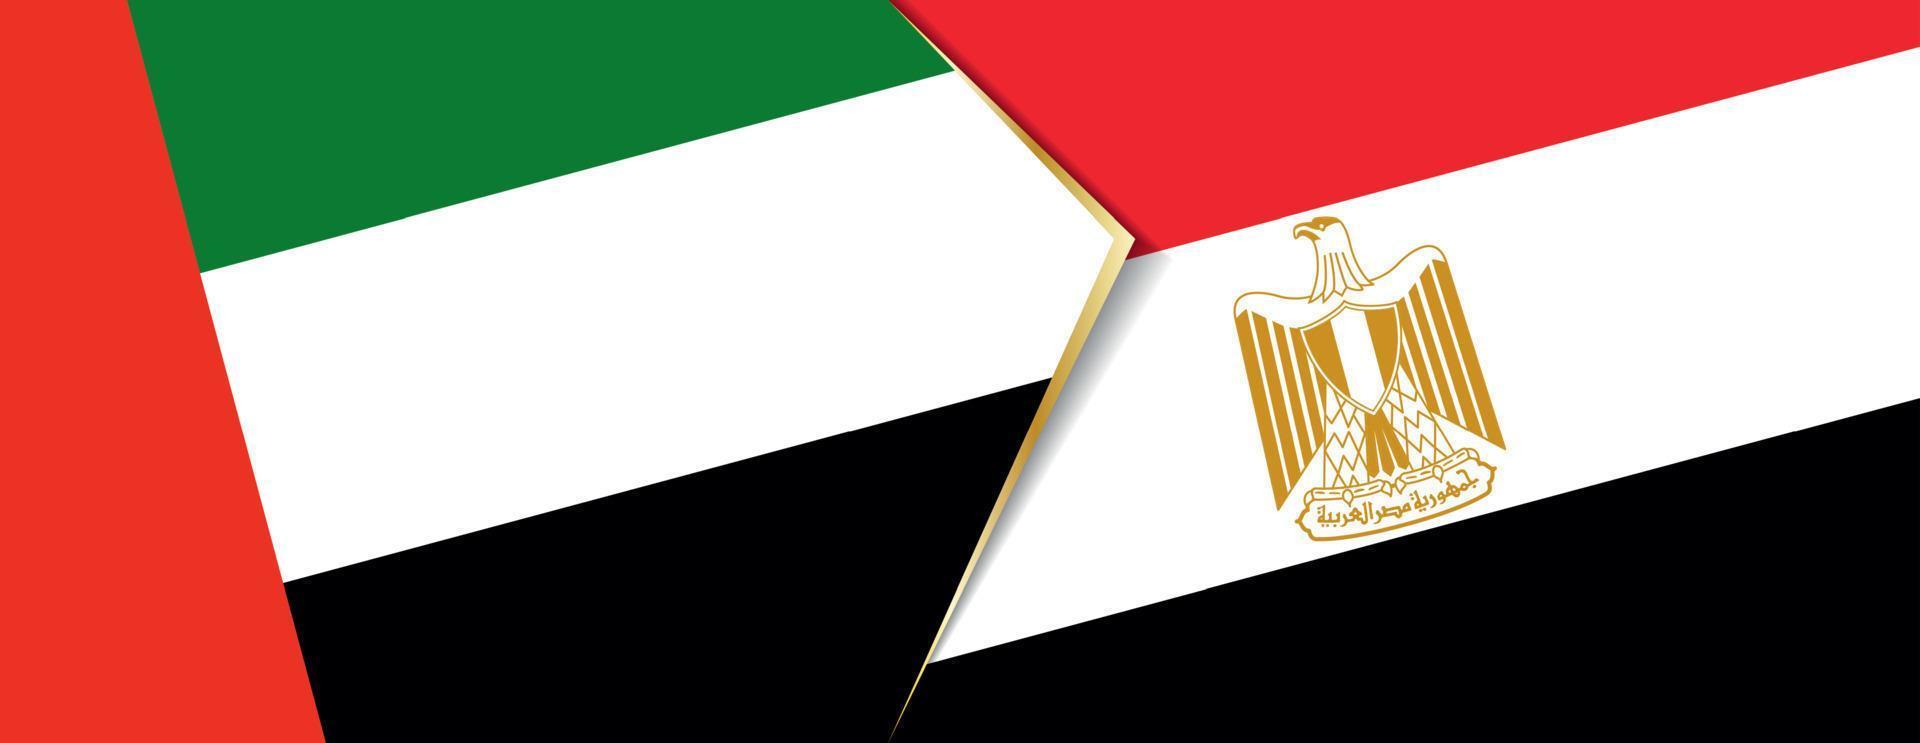 förenad arab emirates och egypten flaggor, två vektor flaggor.